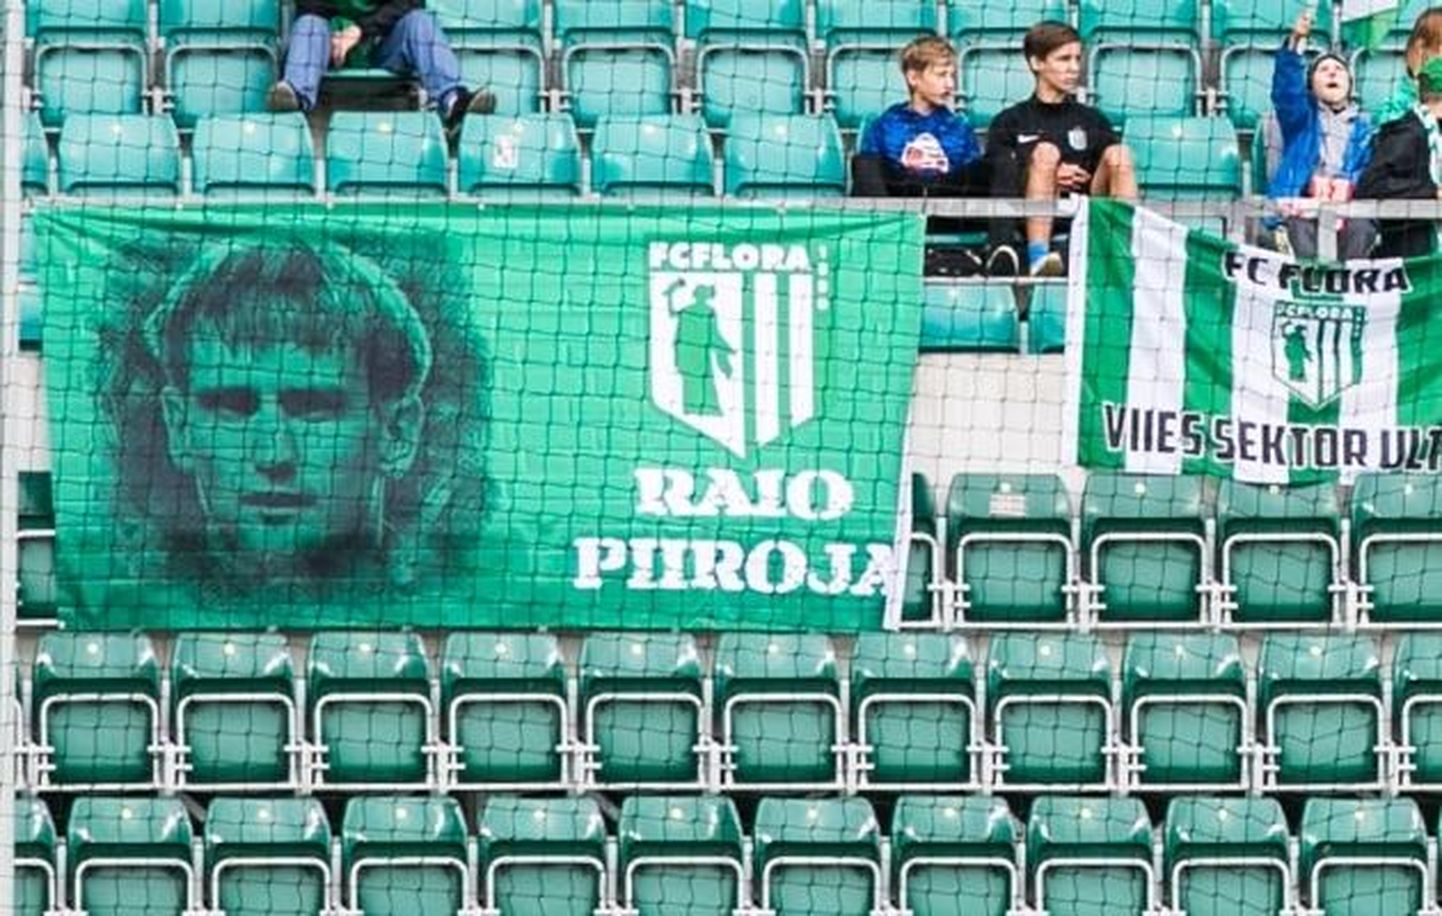 FC Flora fännid tõid eilsel Raio Piiroja sünnipäeval staadionile jalgpallilegendile pühendatud lipu.